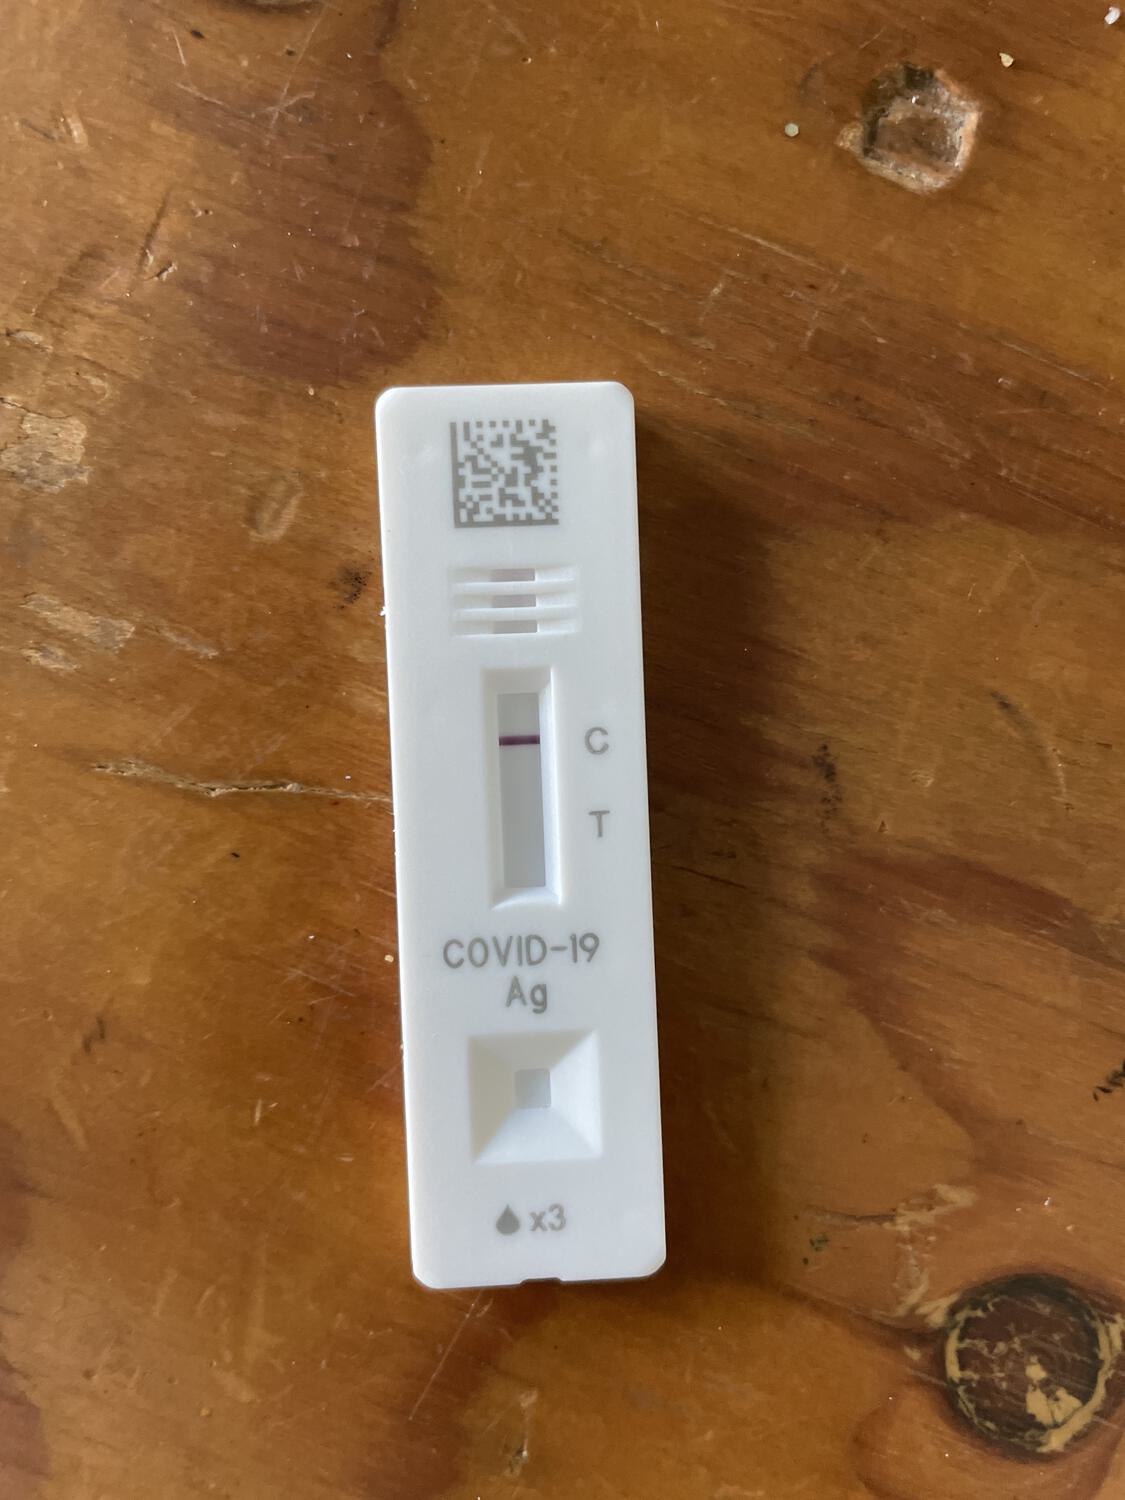 A negative COVID test